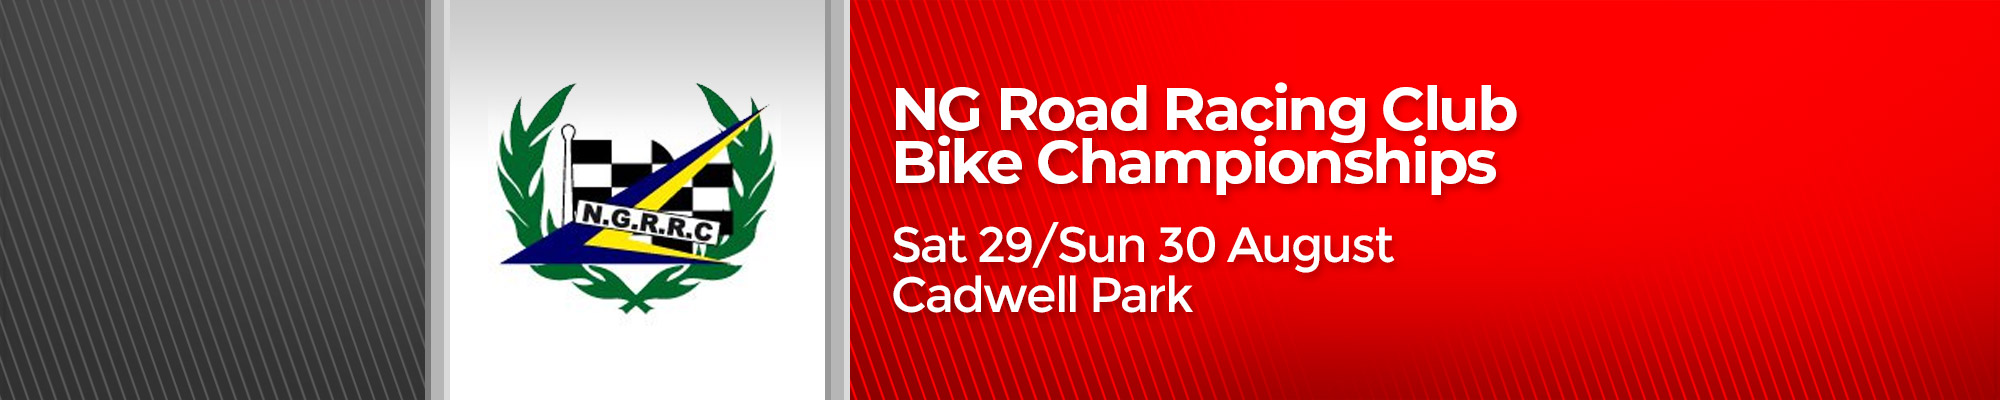  NG Road Racing Club Bike Championships